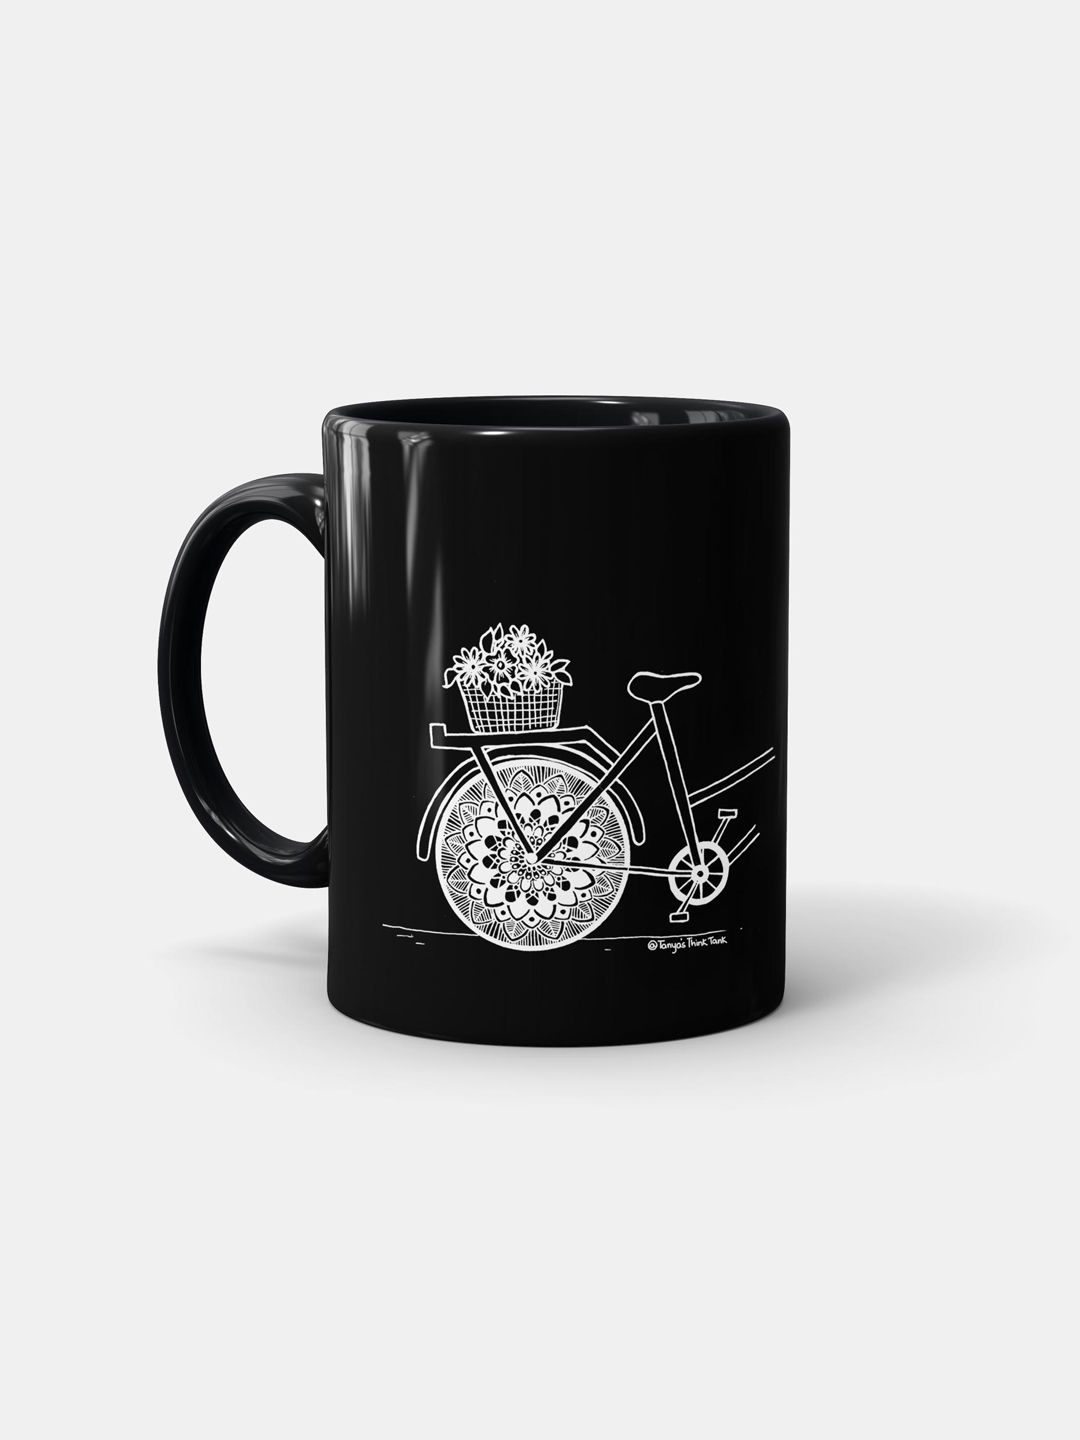 Buy Bicycle Black - Coffee Mugs Black Coffee Mugs Online